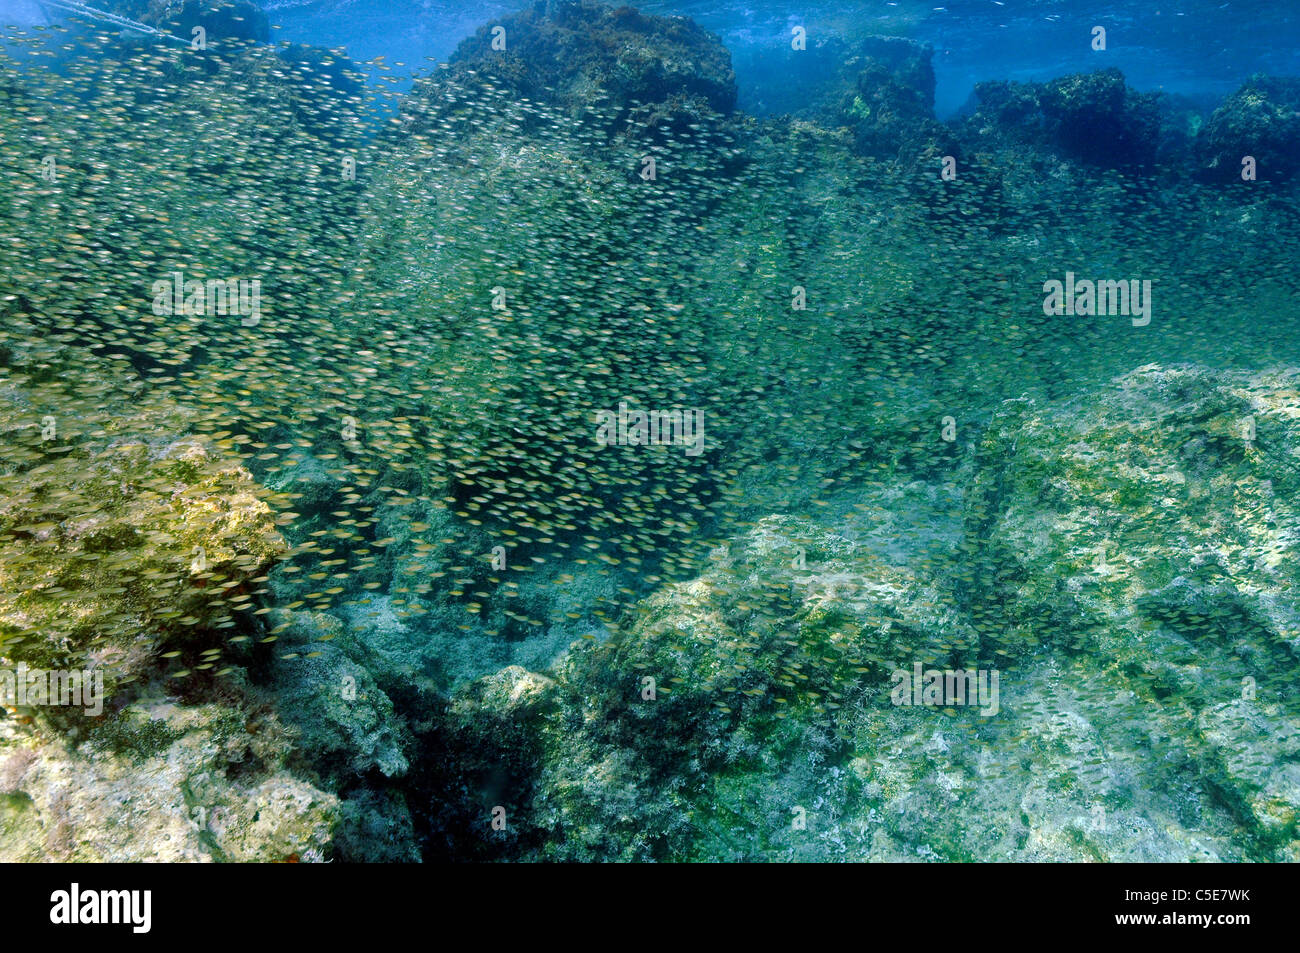 Escuela masiva de menores, rabbitfish spinefoot Siganus rivulatus, especies invasoras del Mar Rojo, Kas Turquía Mediterránea Foto de stock